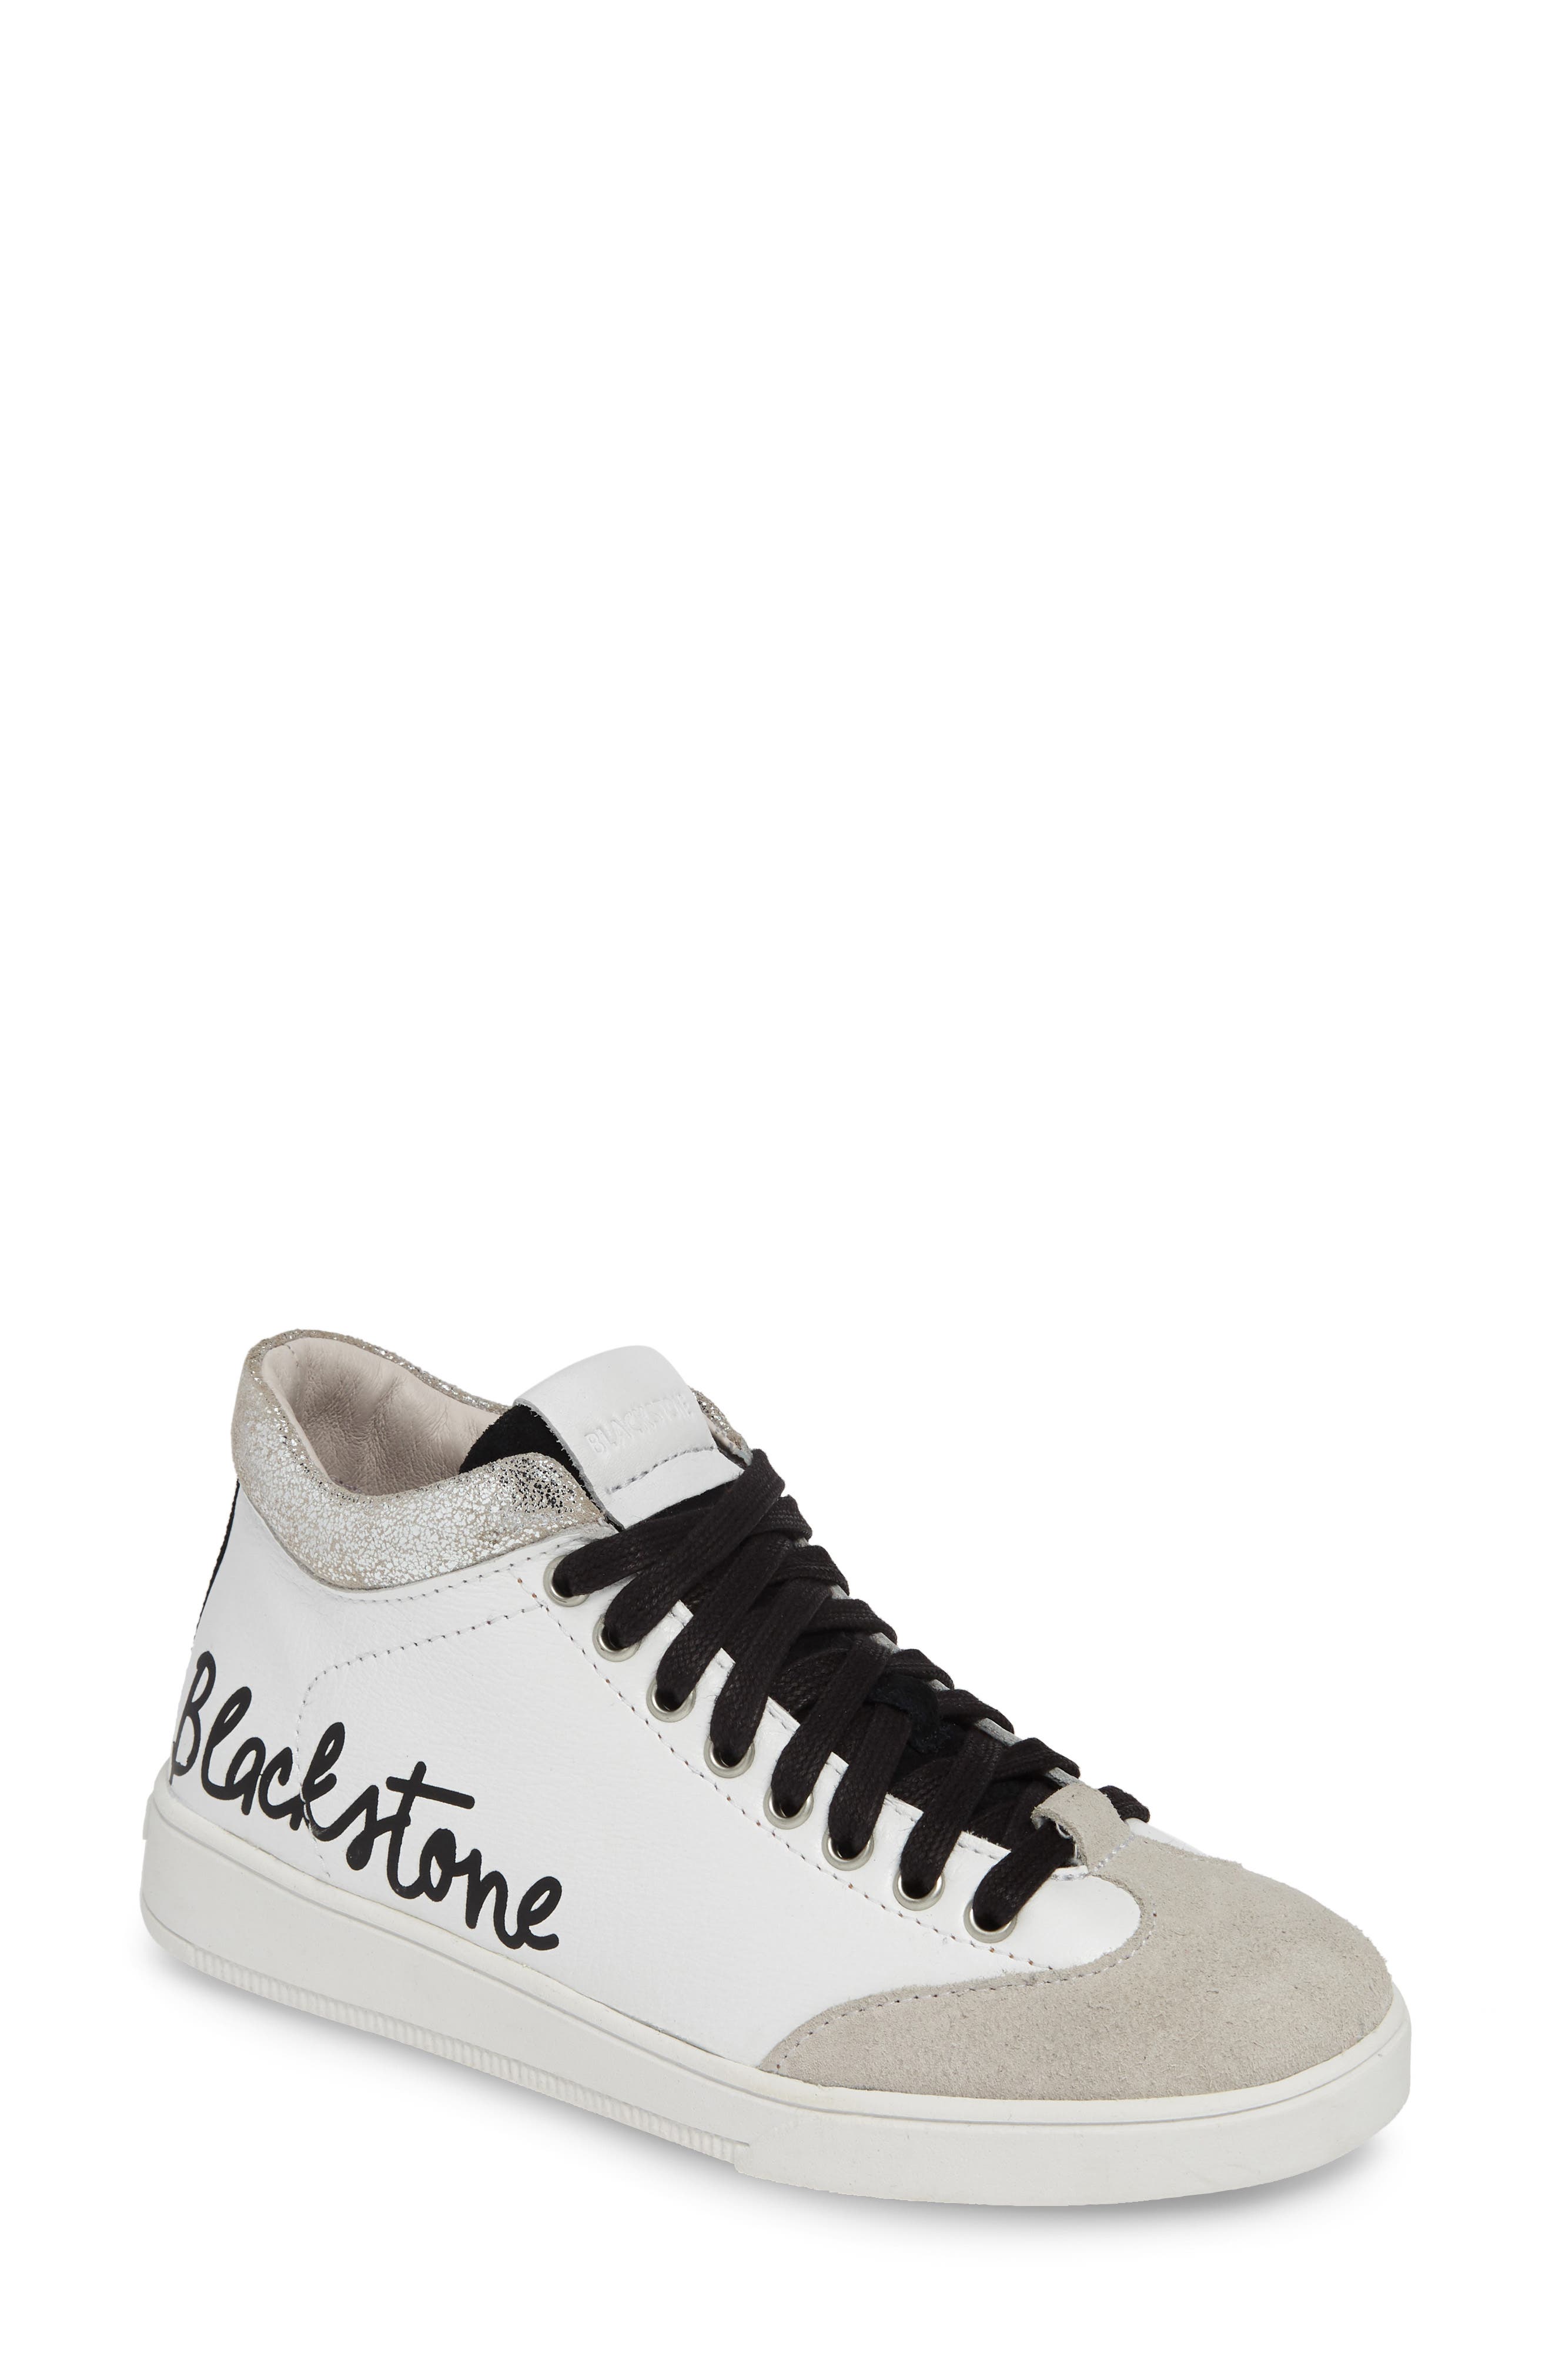 blackstone sneakers sale